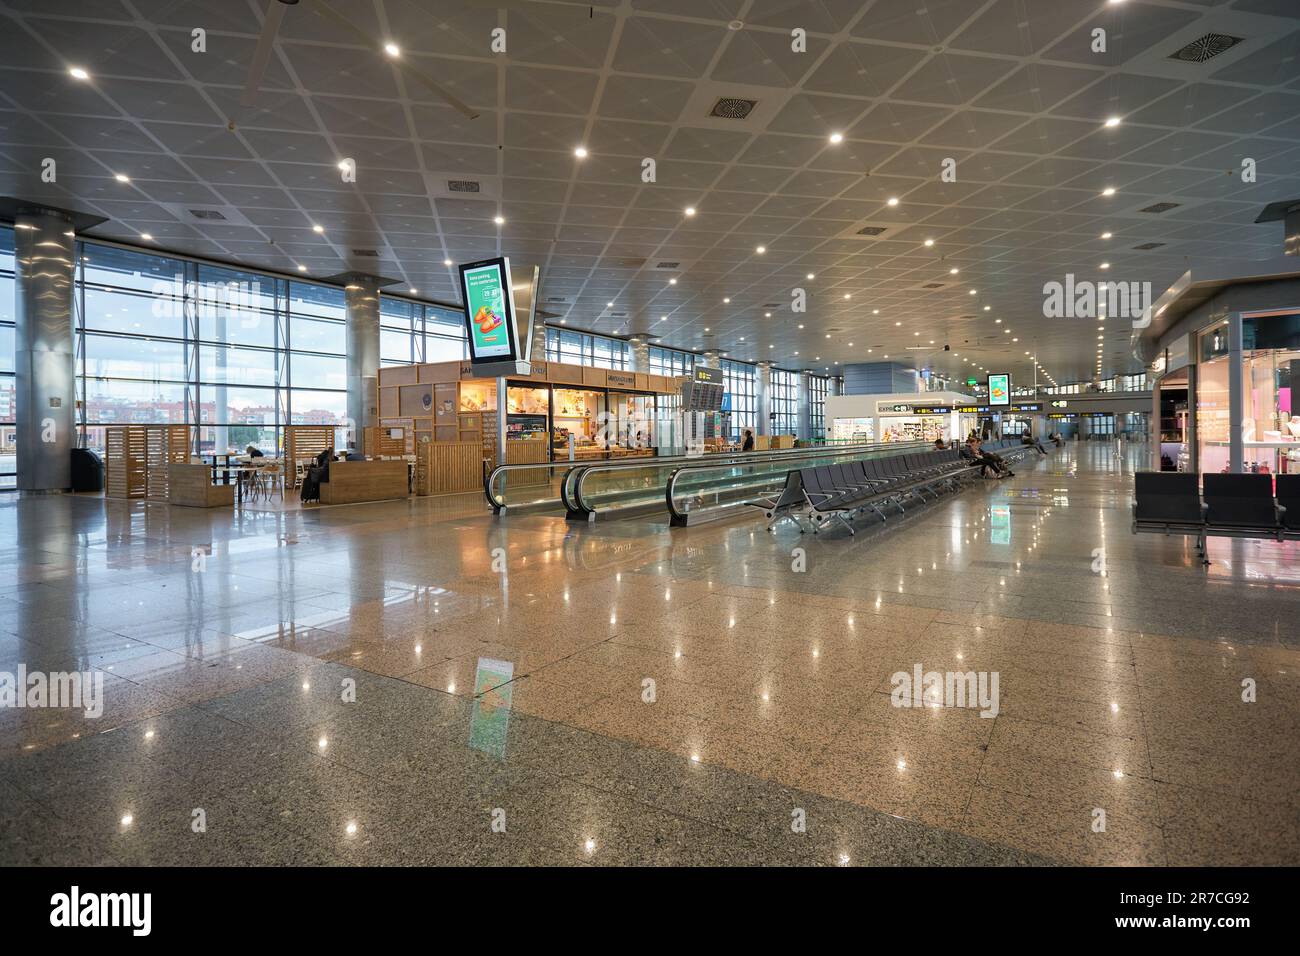 MADRID, SPANIEN - CIRCA JANUAR 2020: Innenaufnahme des Flughafens Madrid-Barajas, des Hauptflughafens von Madrid. Stockfoto